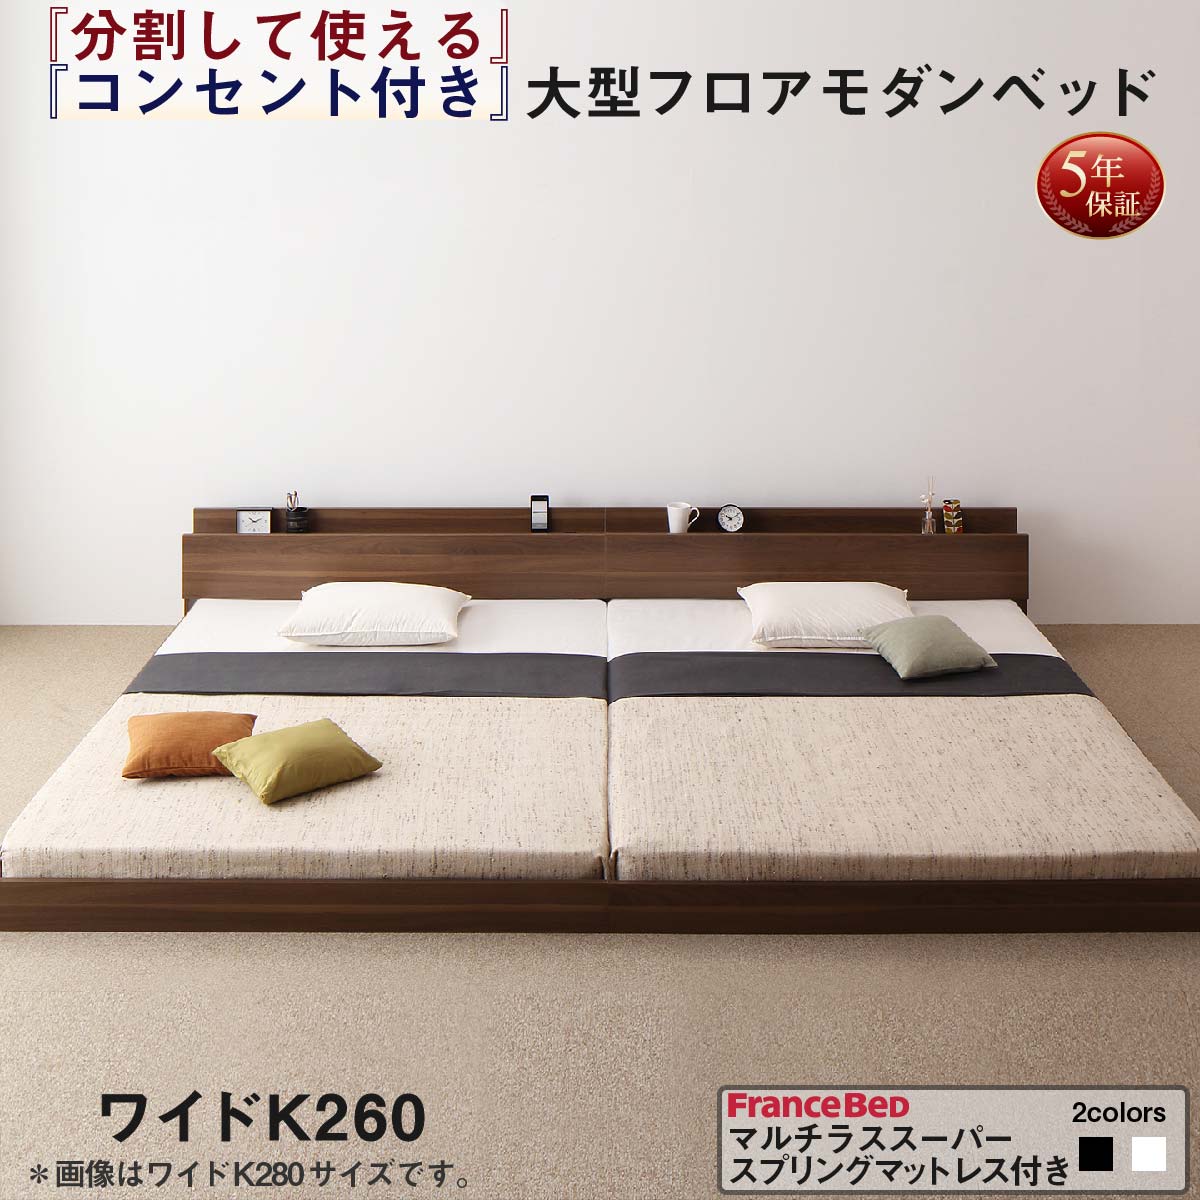 連結ベッド 大型ベッド ファミリー 連結 家族ベッド ローベッド マルチラススーパースプリング マットレス付き ワイドK260(SD+D)